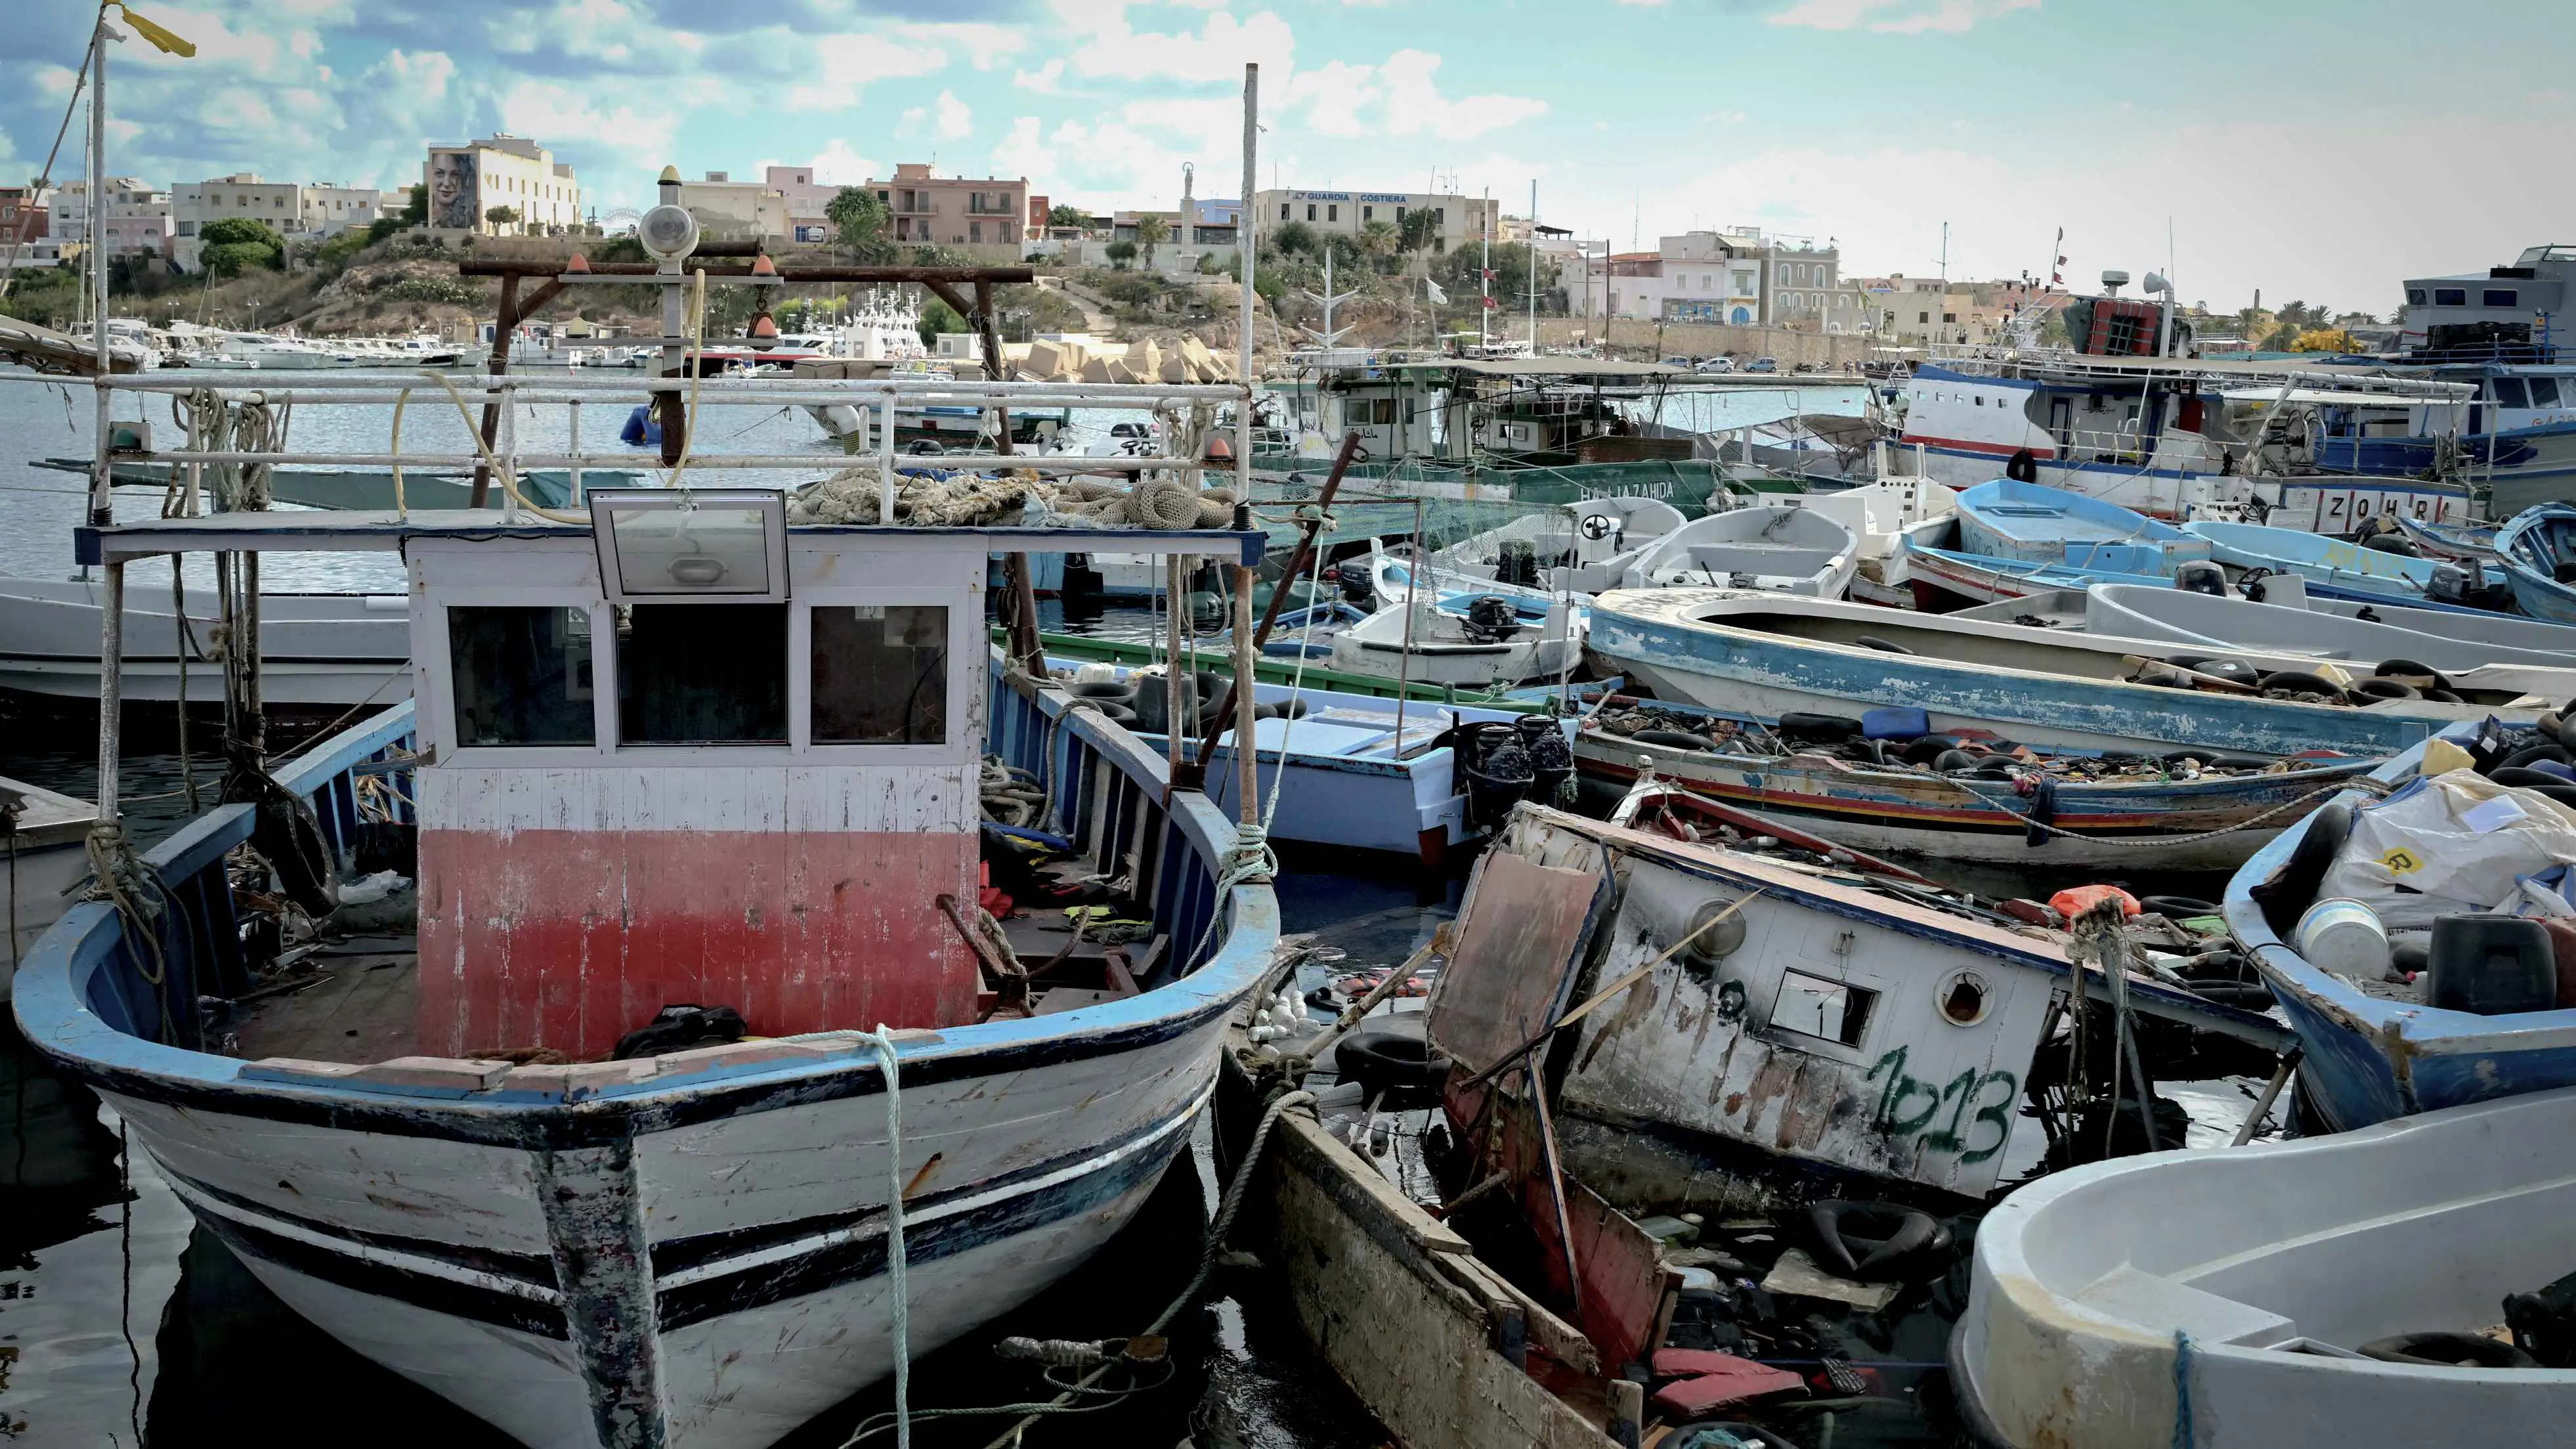 "طوارئ" في البحر المتوسط بعد غرق عشرات المهاجرين